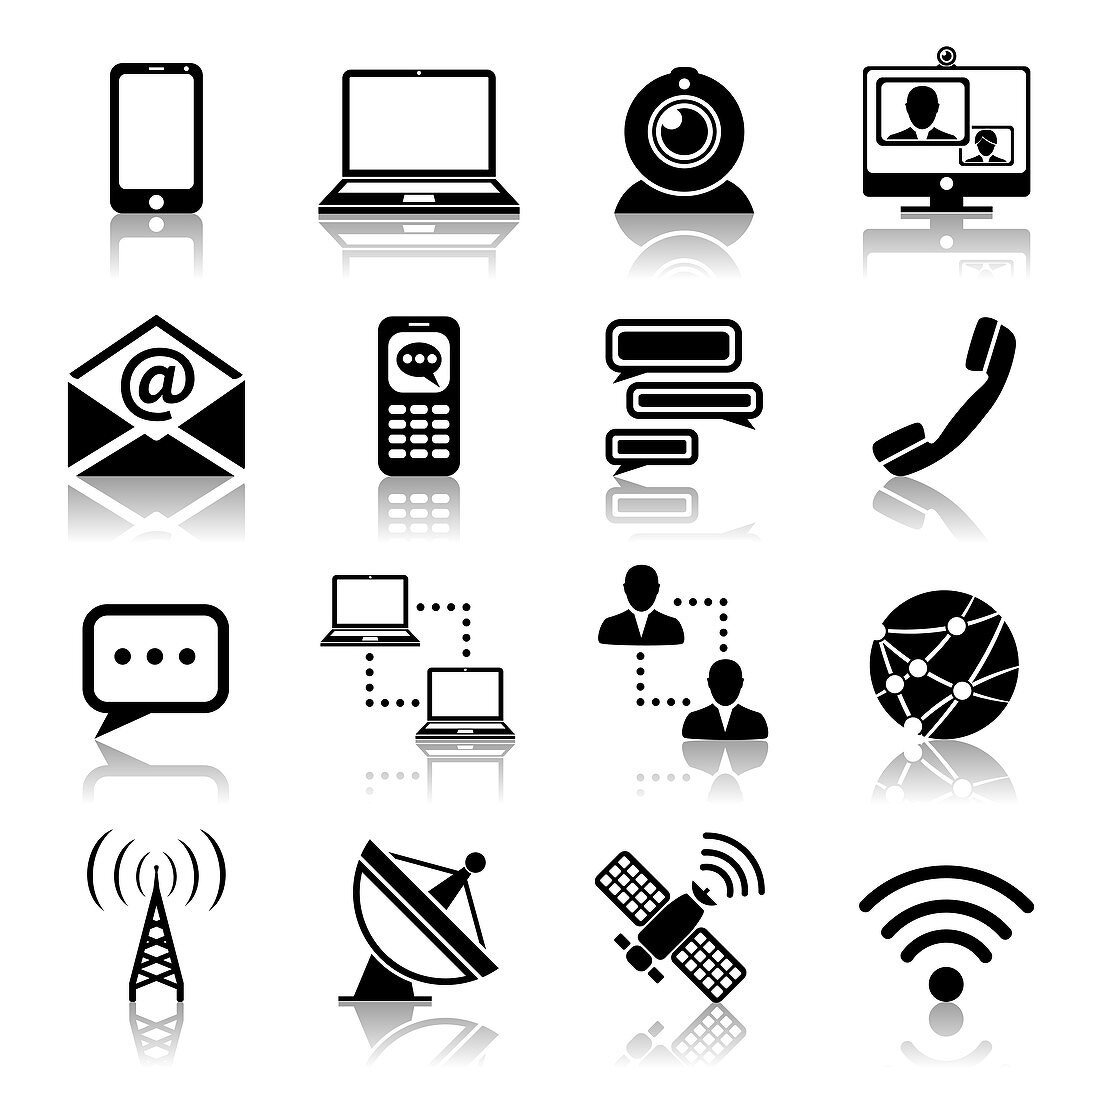 Communication icons, illustration